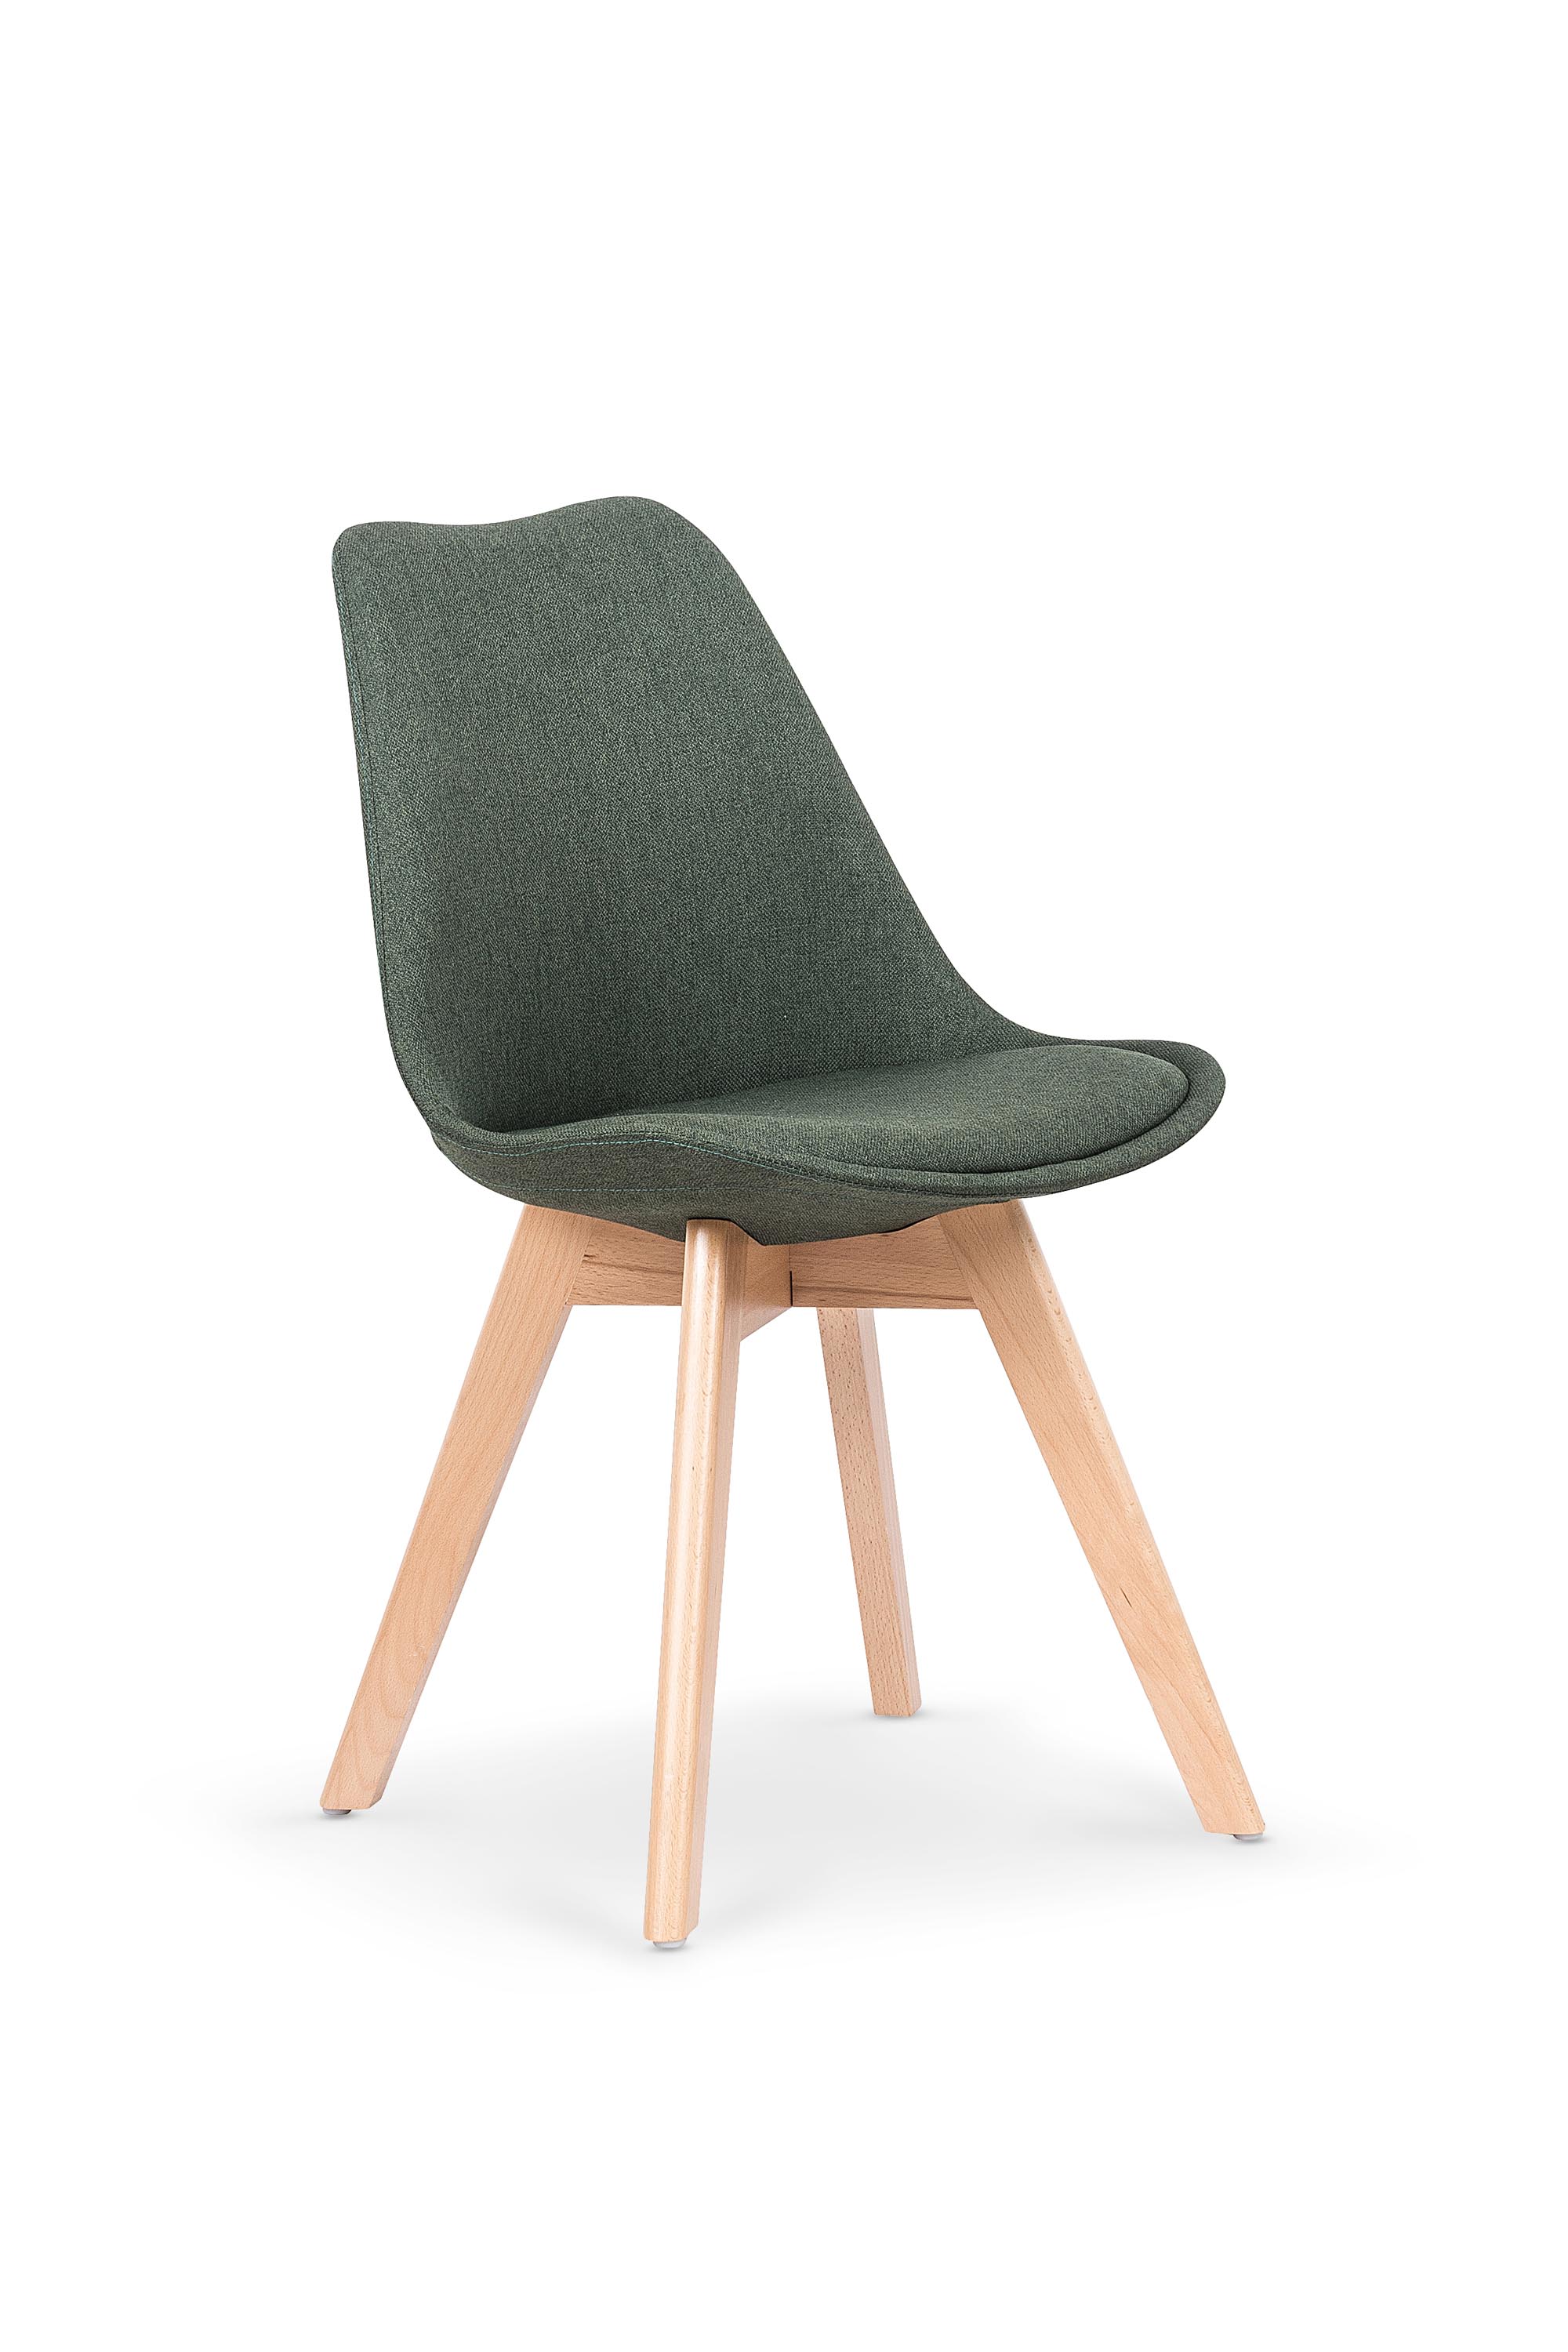 K303 krzesło ciemny zielony / buk